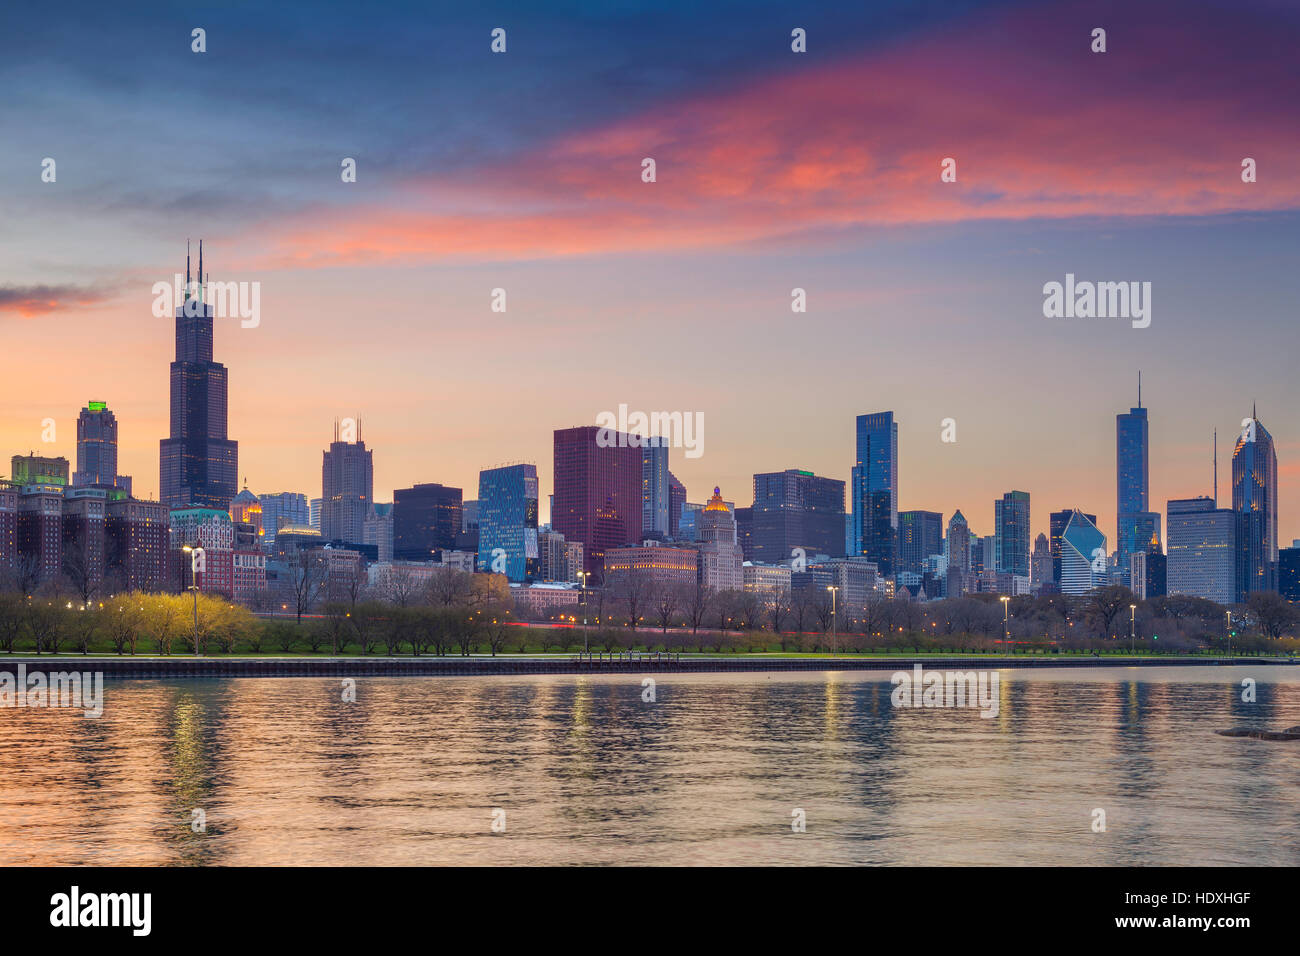 Skyline von Chicago. Stadtbild Bild der Skyline von Chicago während des Sonnenuntergangs. Stockfoto